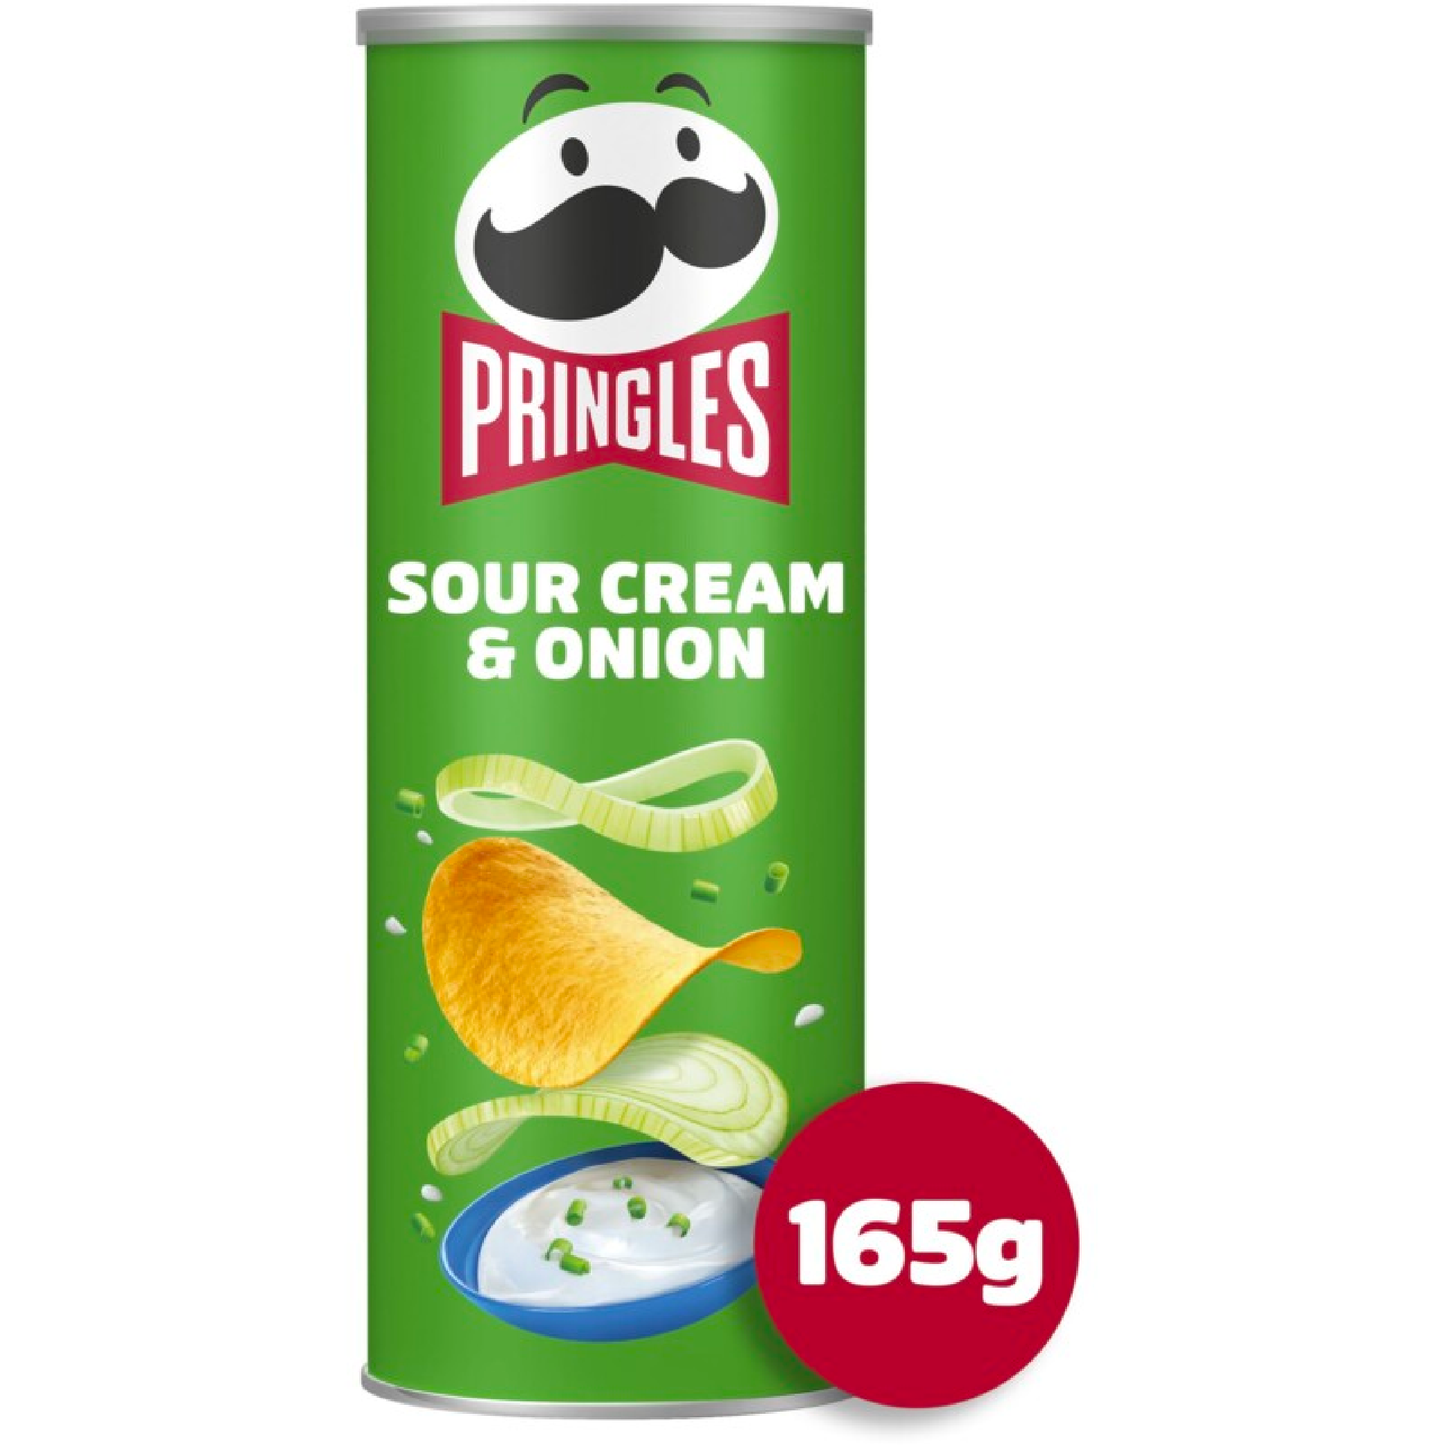 Pringles Sour Cream & Onion 165g - Snack-It